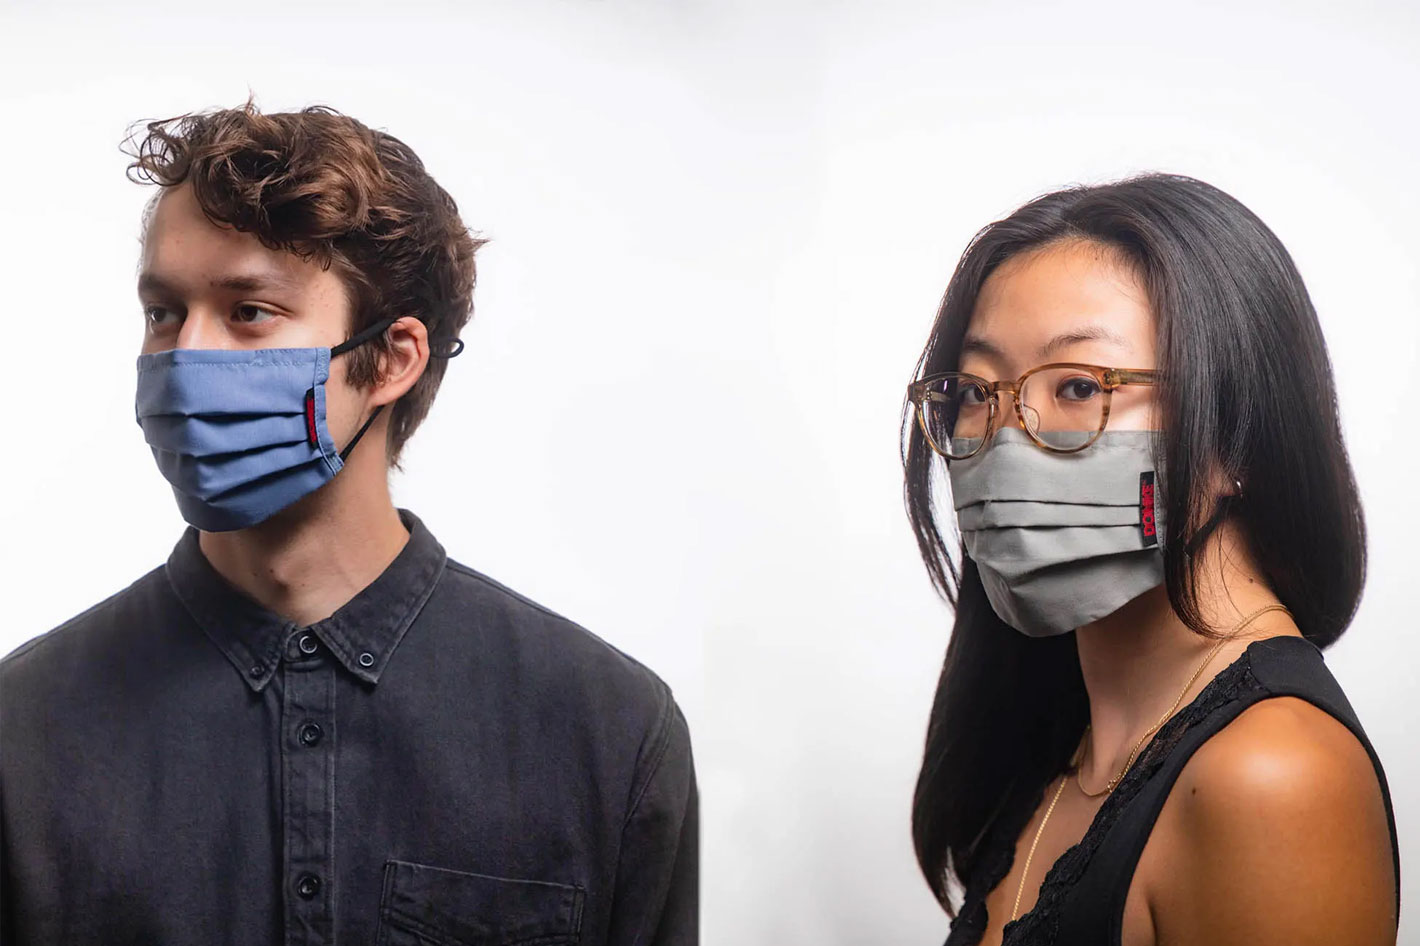 Domke lifestyle face masks: designed for imagemakers